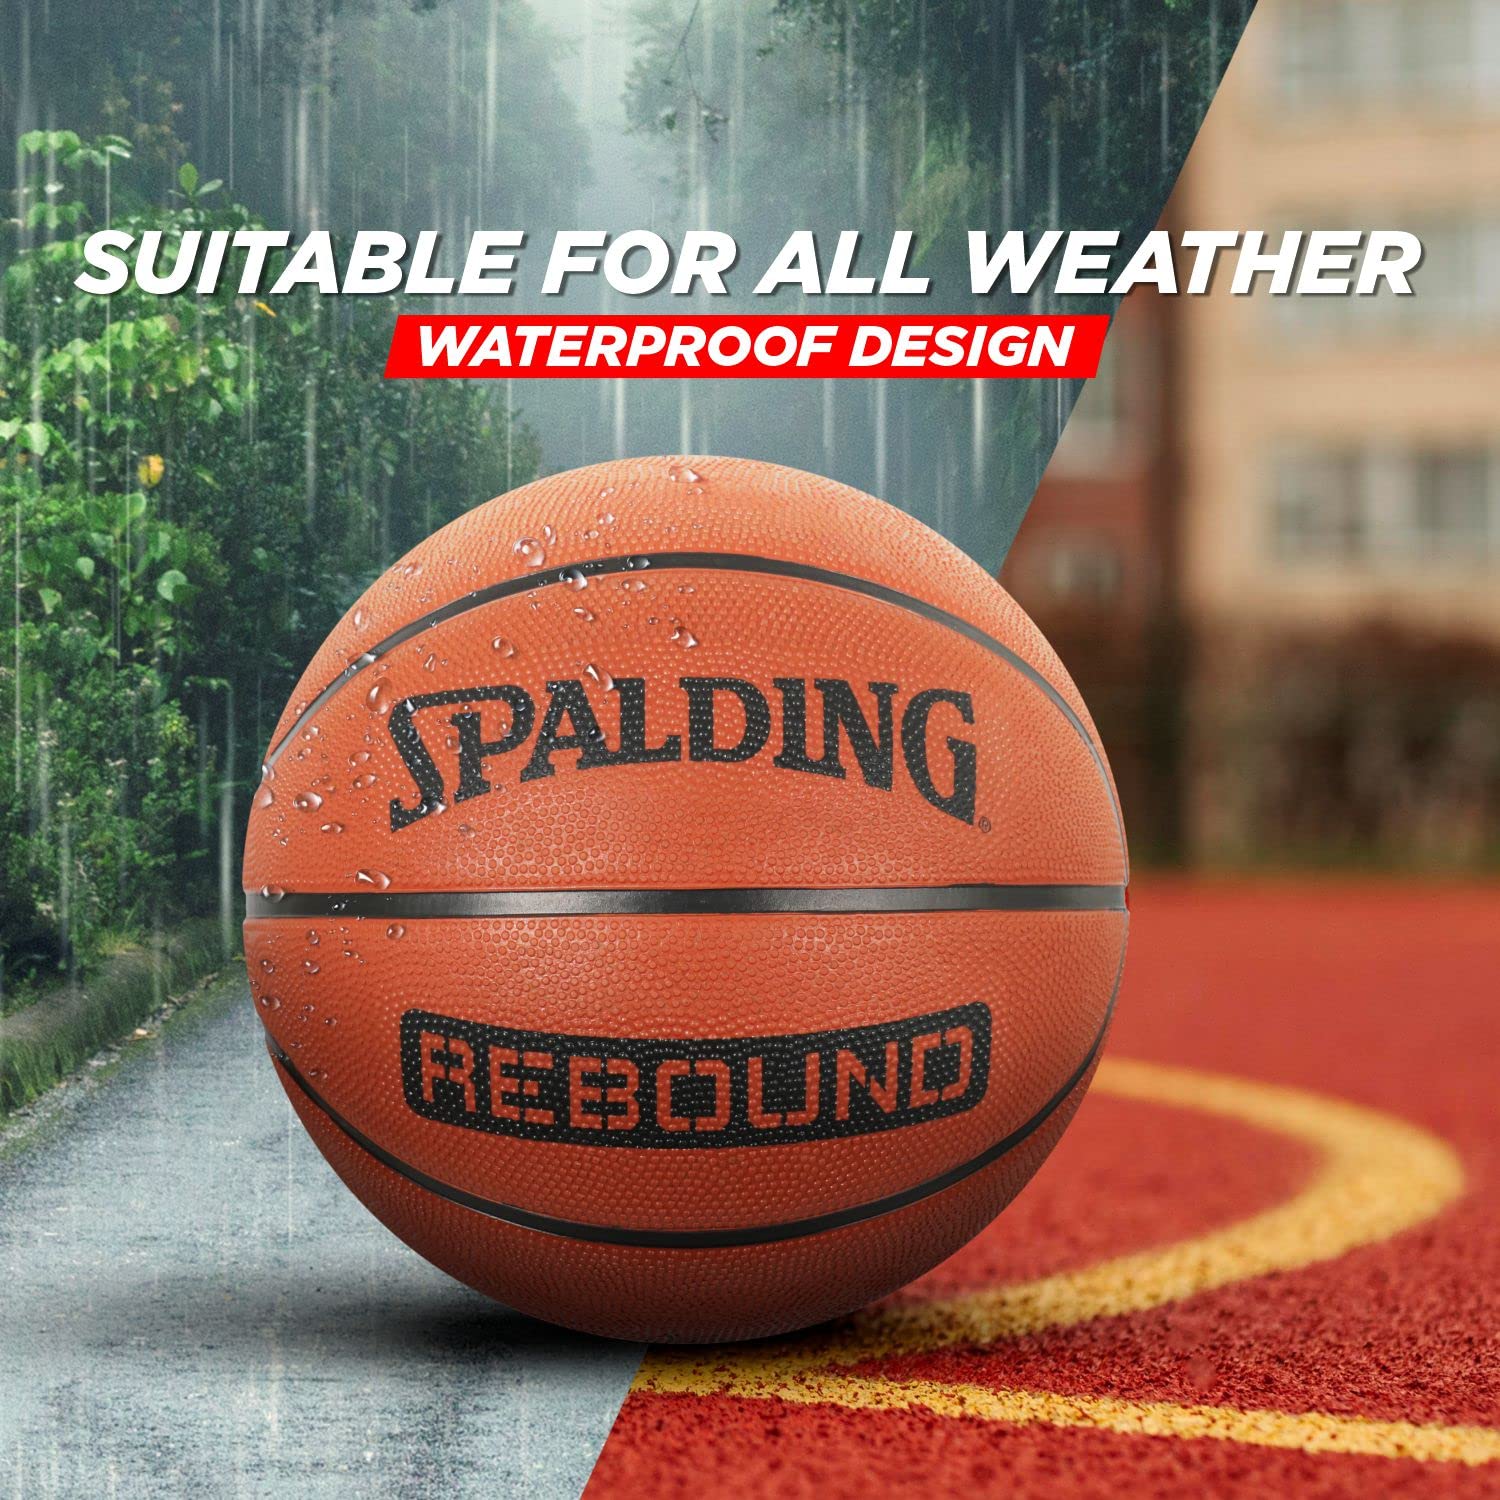 Spalding NBA Rebound Basketball Brick - Best Price online Prokicksports.com